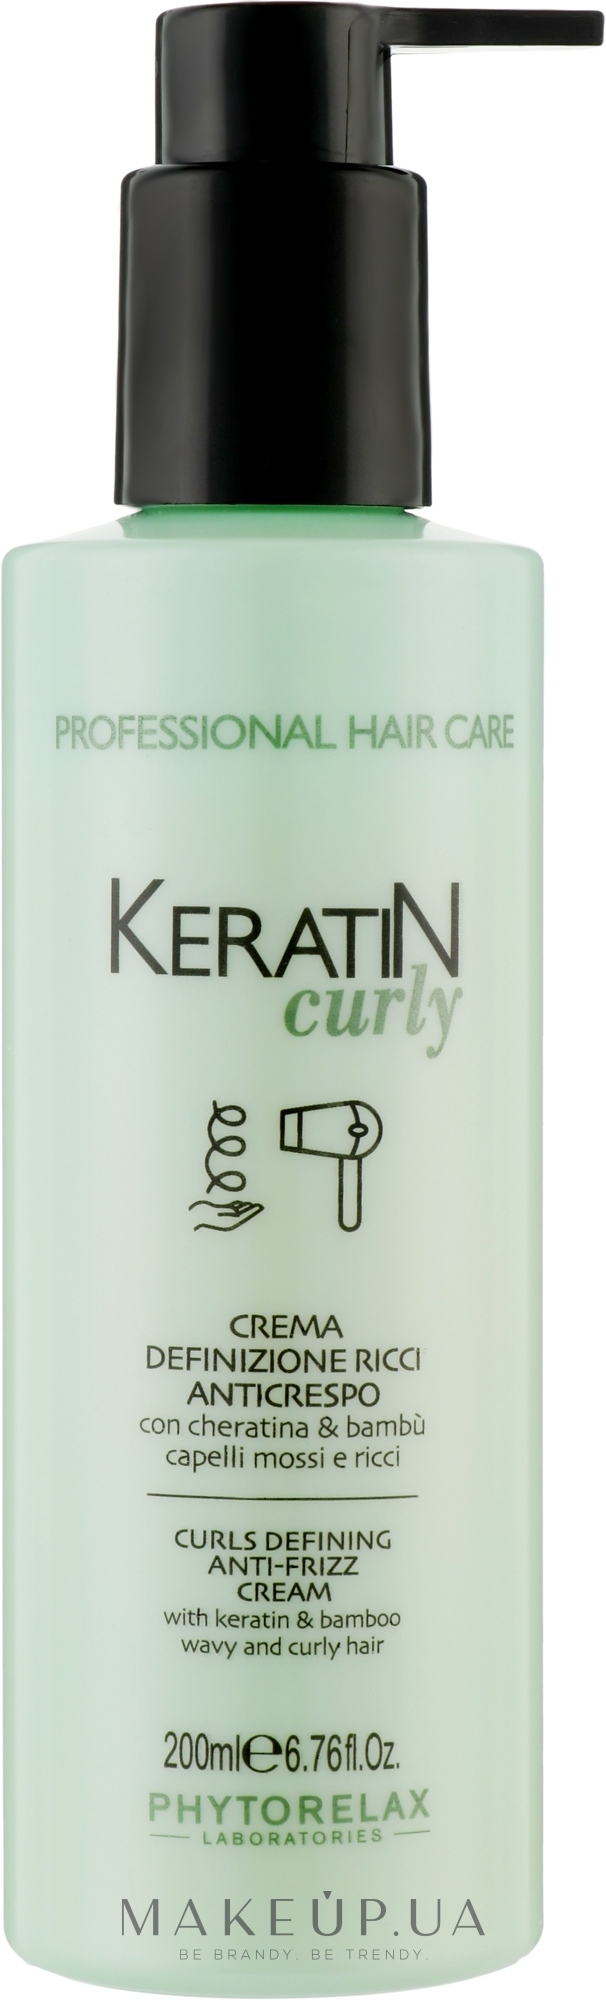 Крем для разглаживания вьющихся волос - Phytorelax Laboratories Keratin Curly Curls Defining Anti-Frizz Cream — фото 200ml